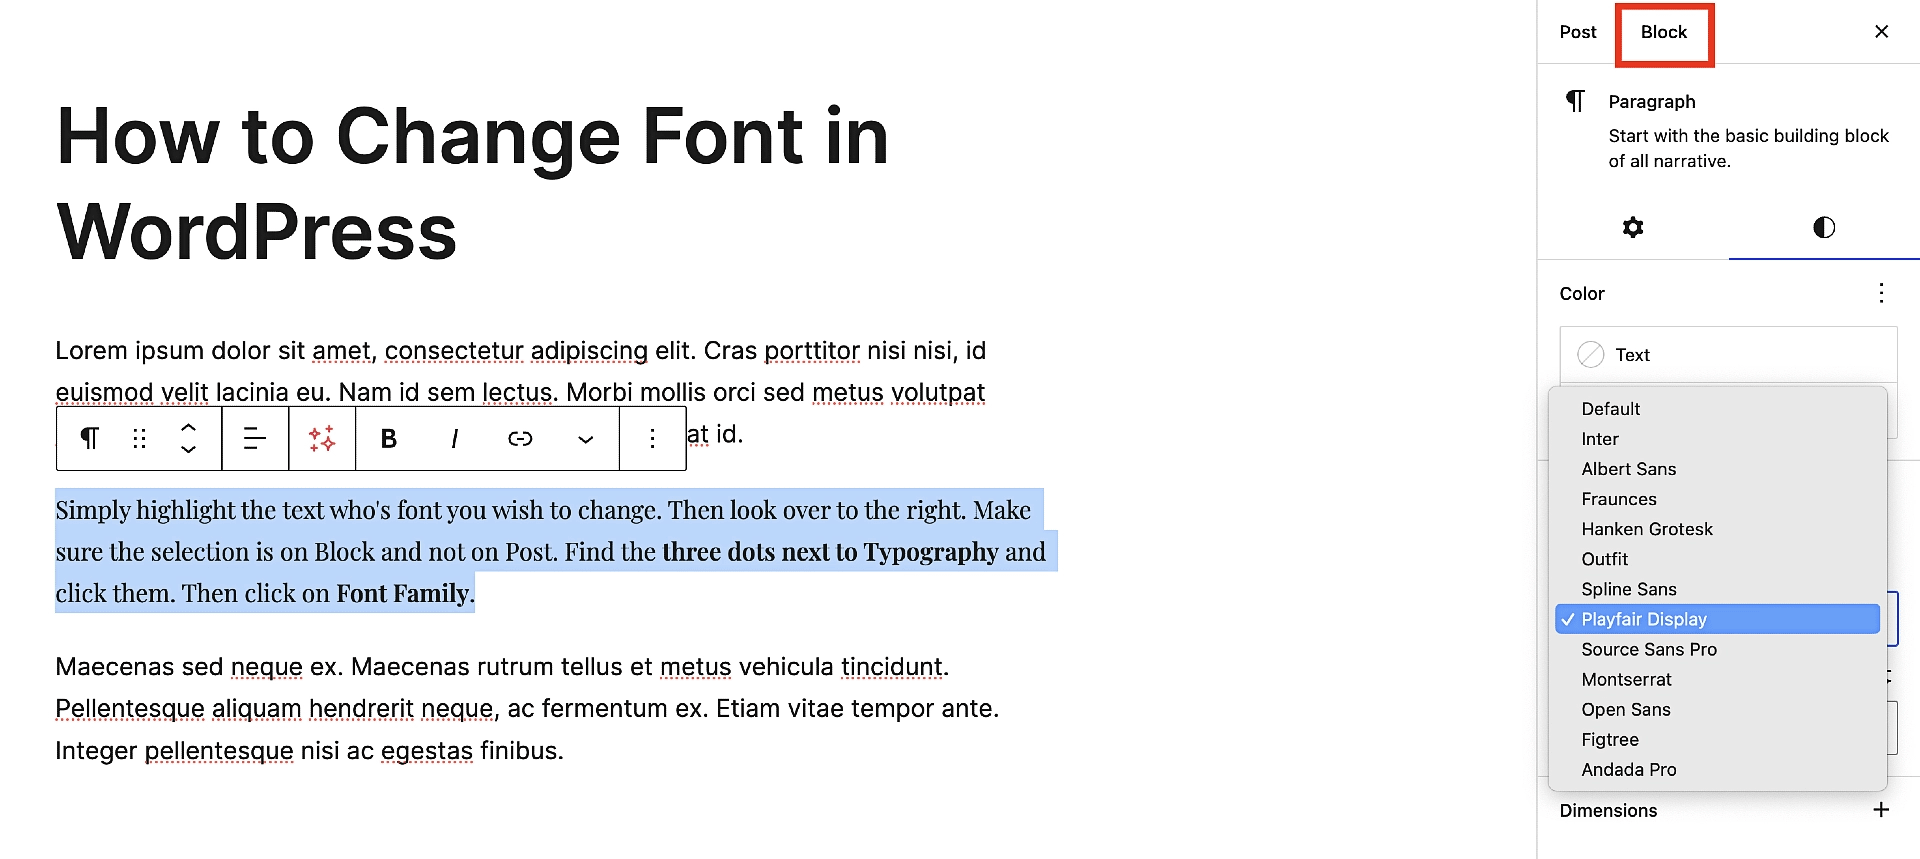 블록 편집기에서 로컬로 글꼴을 변경하는 방법을 보여줍니다.